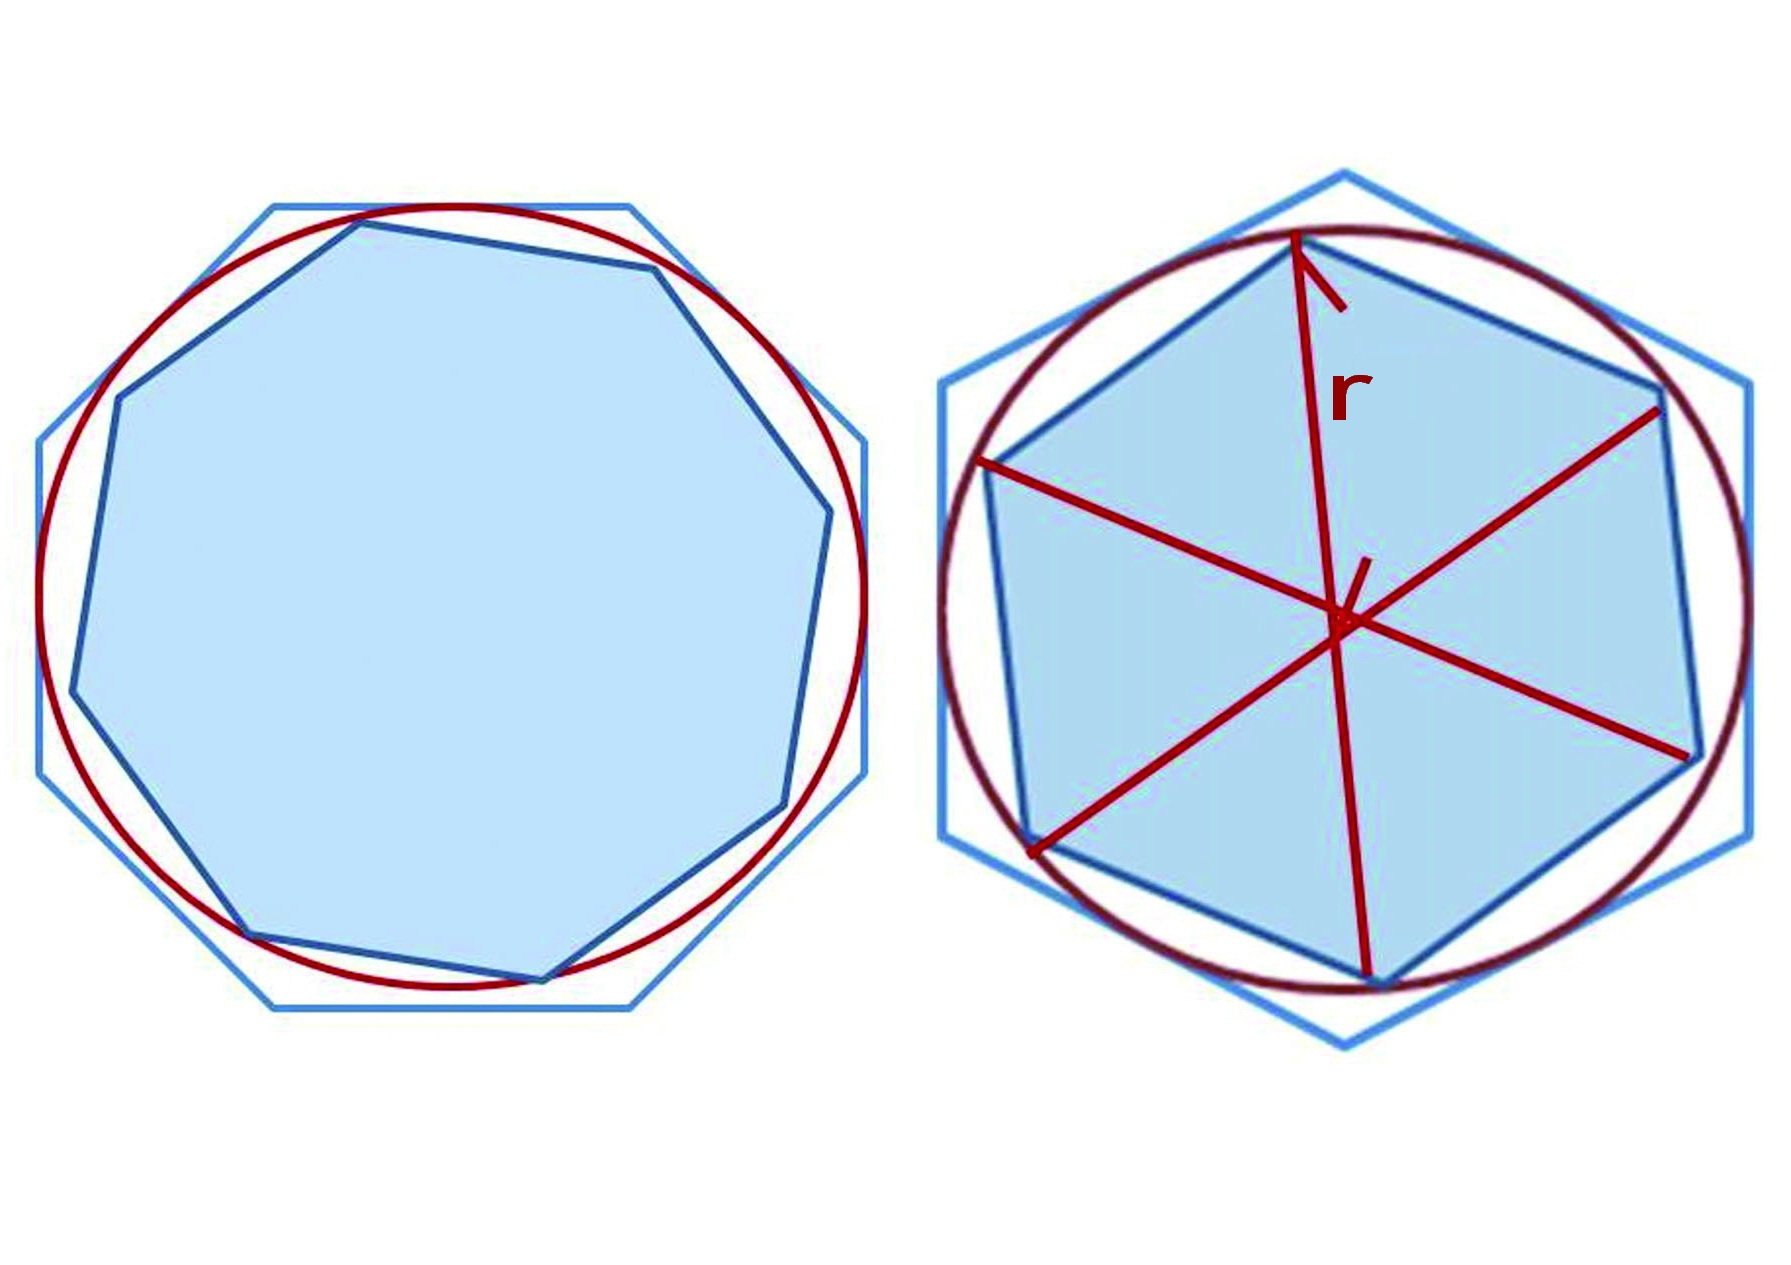 阿基米德用圓的內接與外切正N邊形的周長來計算圓周率π，他的圓周率介於223／71及22／7之間。讓邊數一再倍增而求得更精確的估計值的方法，阿基米德稱為「窮盡法」（Method of Exhaustion）。